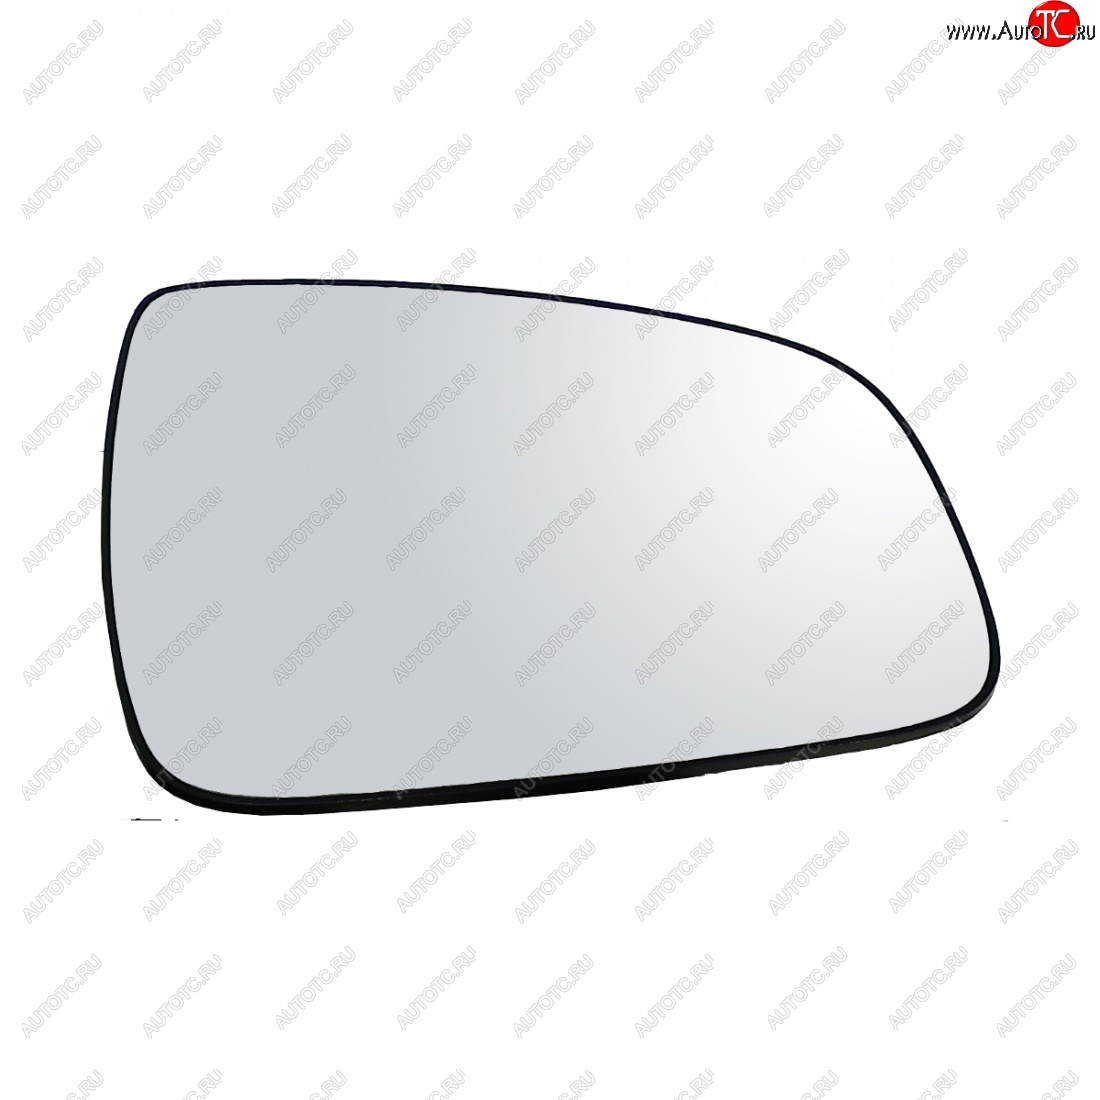 399 р. Правый зеркальный элемент (обогрев) Автоблик2 Nissan Terrano D10 дорестайлинг (2013-2016) (без антибликового покрытия)